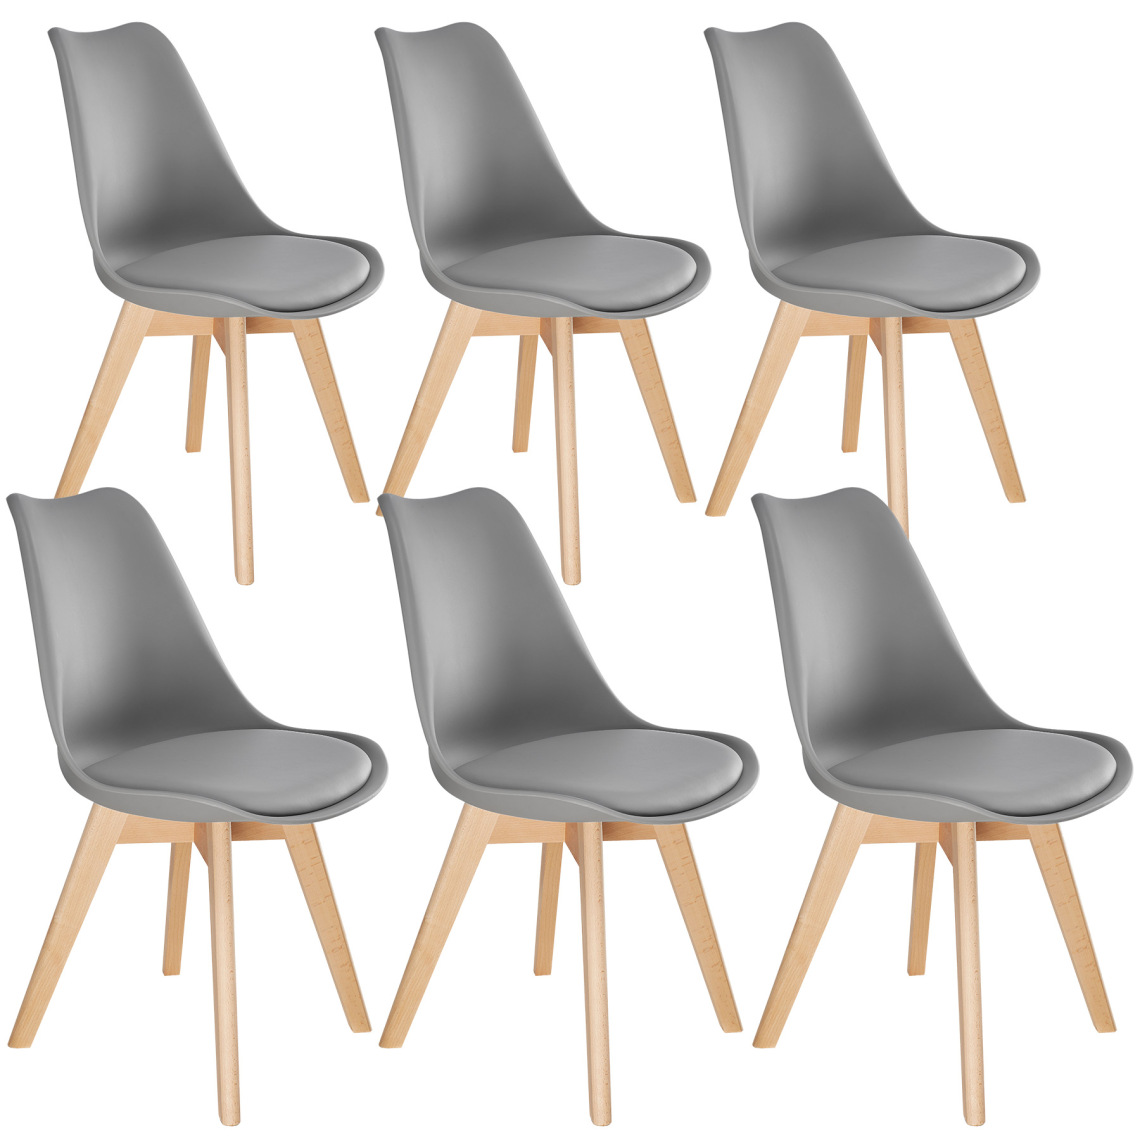 Tectake - 6 Chaises de Salle à Manger FRÉDÉRIQUE Style Scandinave Pieds en Bois Massif Design Moderne - gris - Chaises